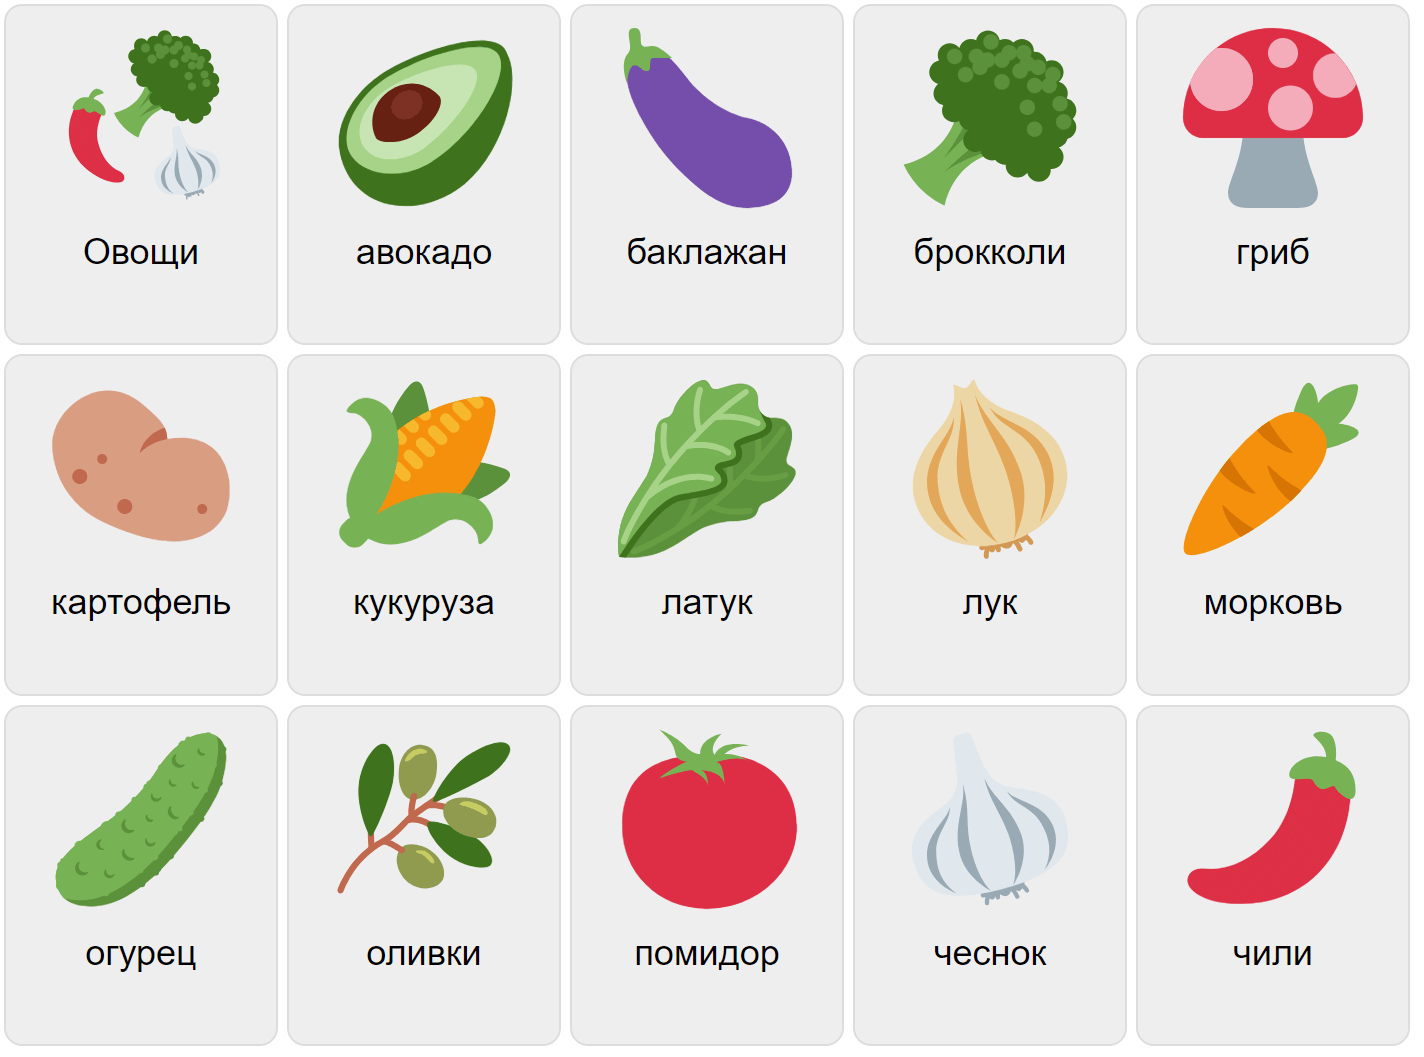 Grönsaker på ryska